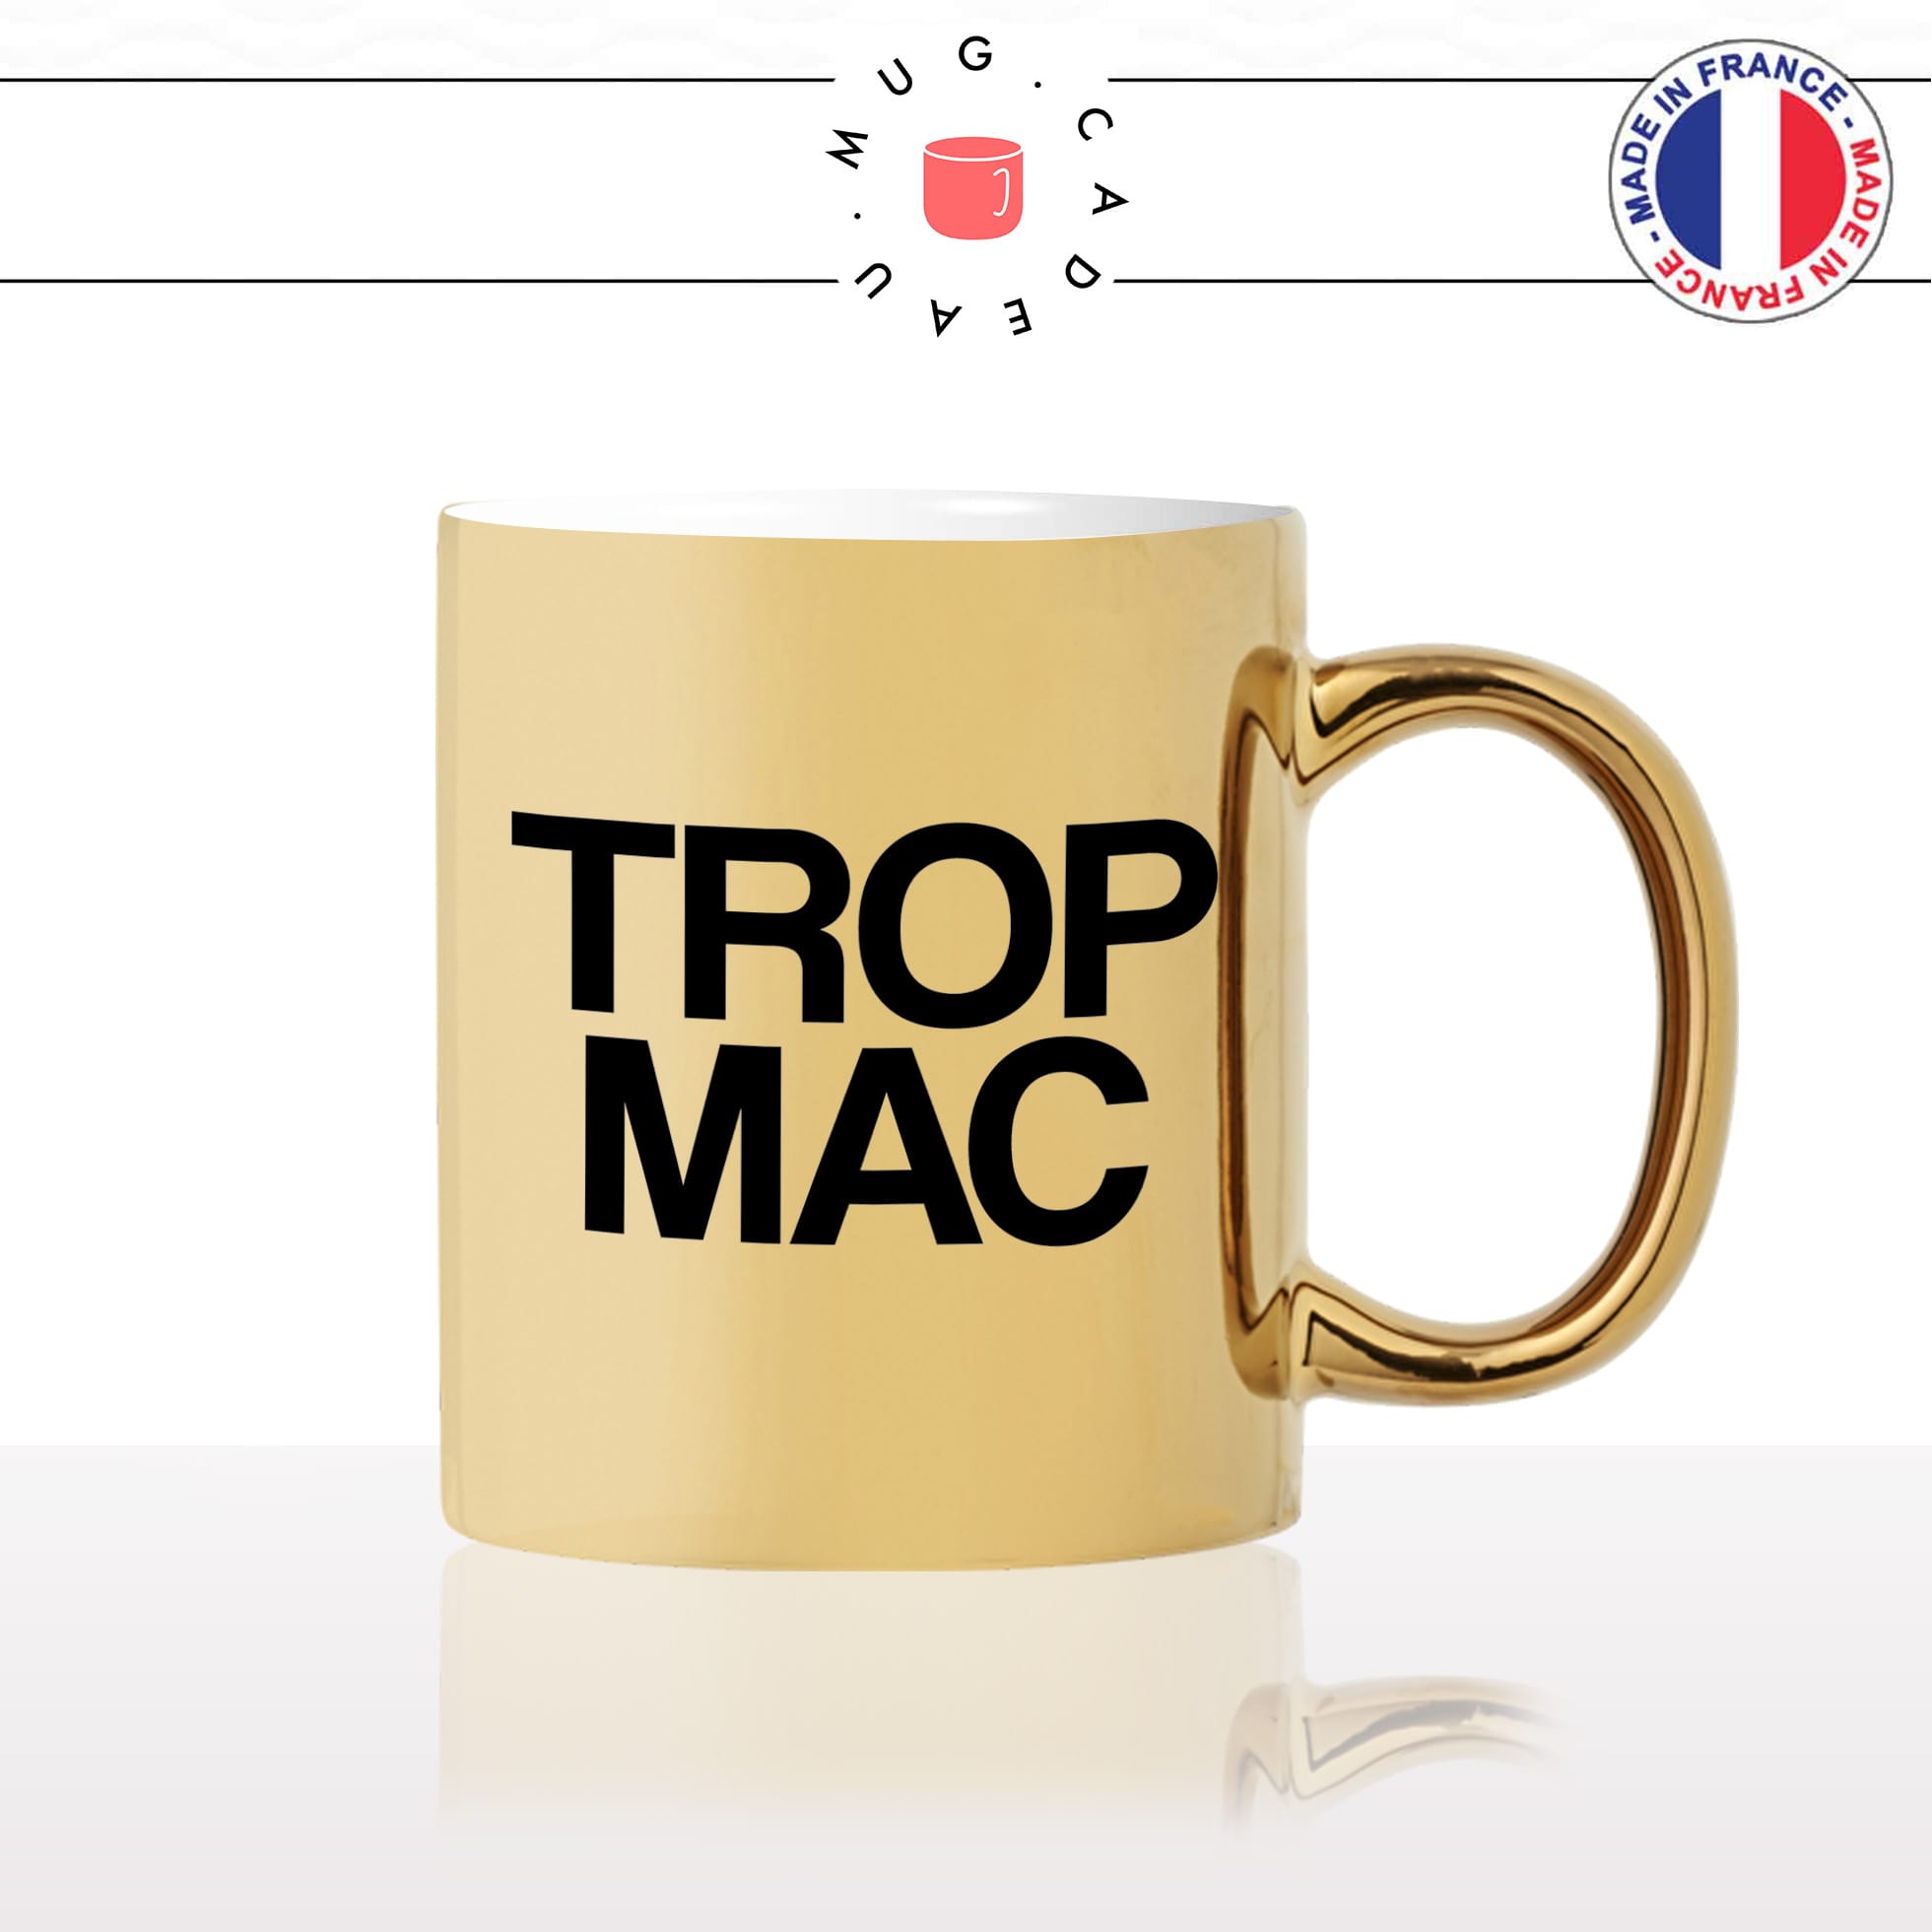 mug-tasse-or-gold-doré-trop-mac-maccu-corse-corsica-expression-génial-humour-langue-ile-beauté-fun-idée-cadeau-original-personnalisé-café-thé2-min